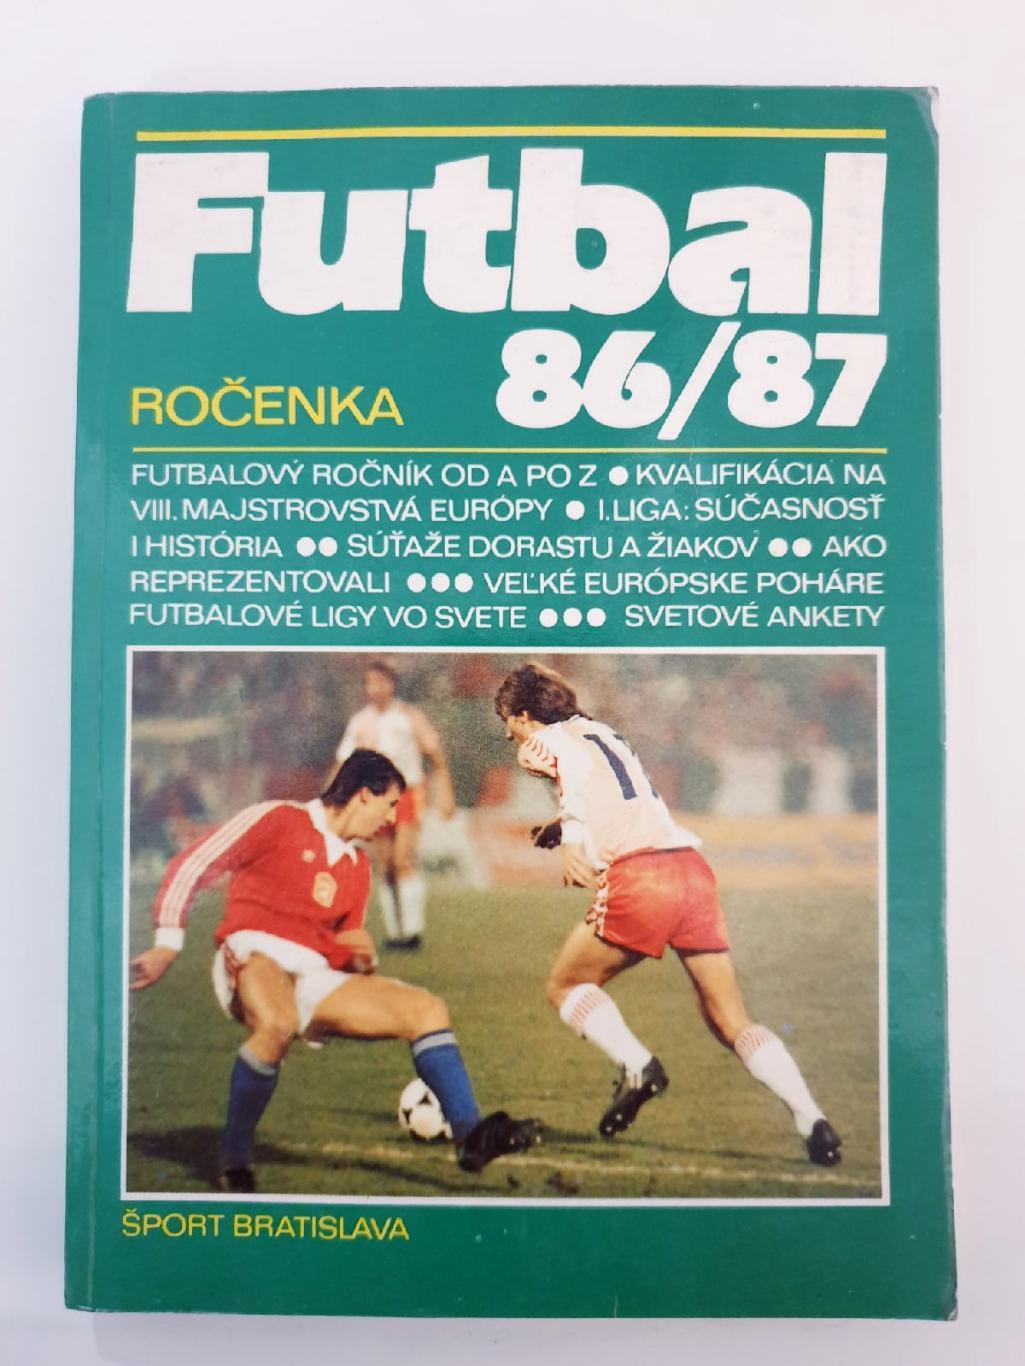 Футбол. Ежегодник Братислава/Чехословакия 1986/87 (200 страниц)